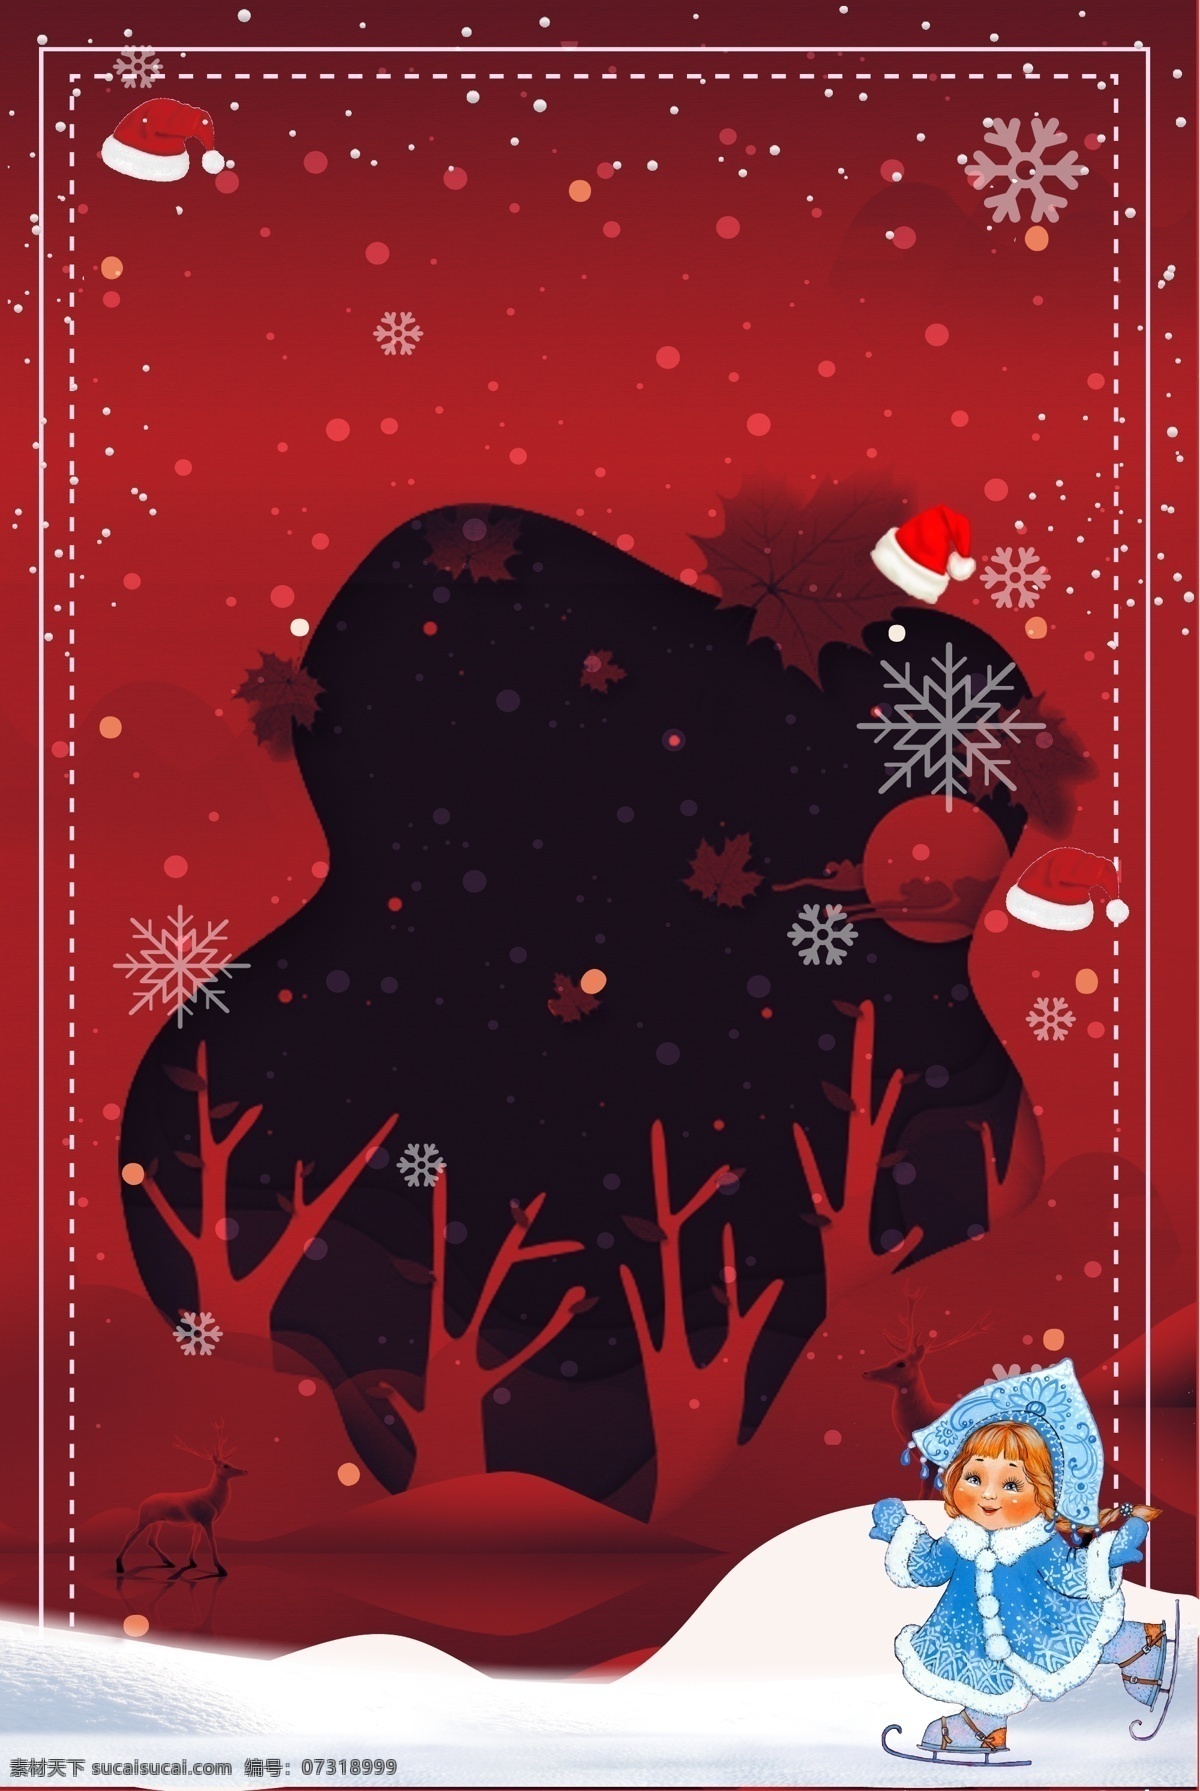 红色 大气 圣诞 狂欢 宣传 背景 手绘背景 圣诞快乐 水彩背景 平安夜 雪人 圣诞节促销 冬至